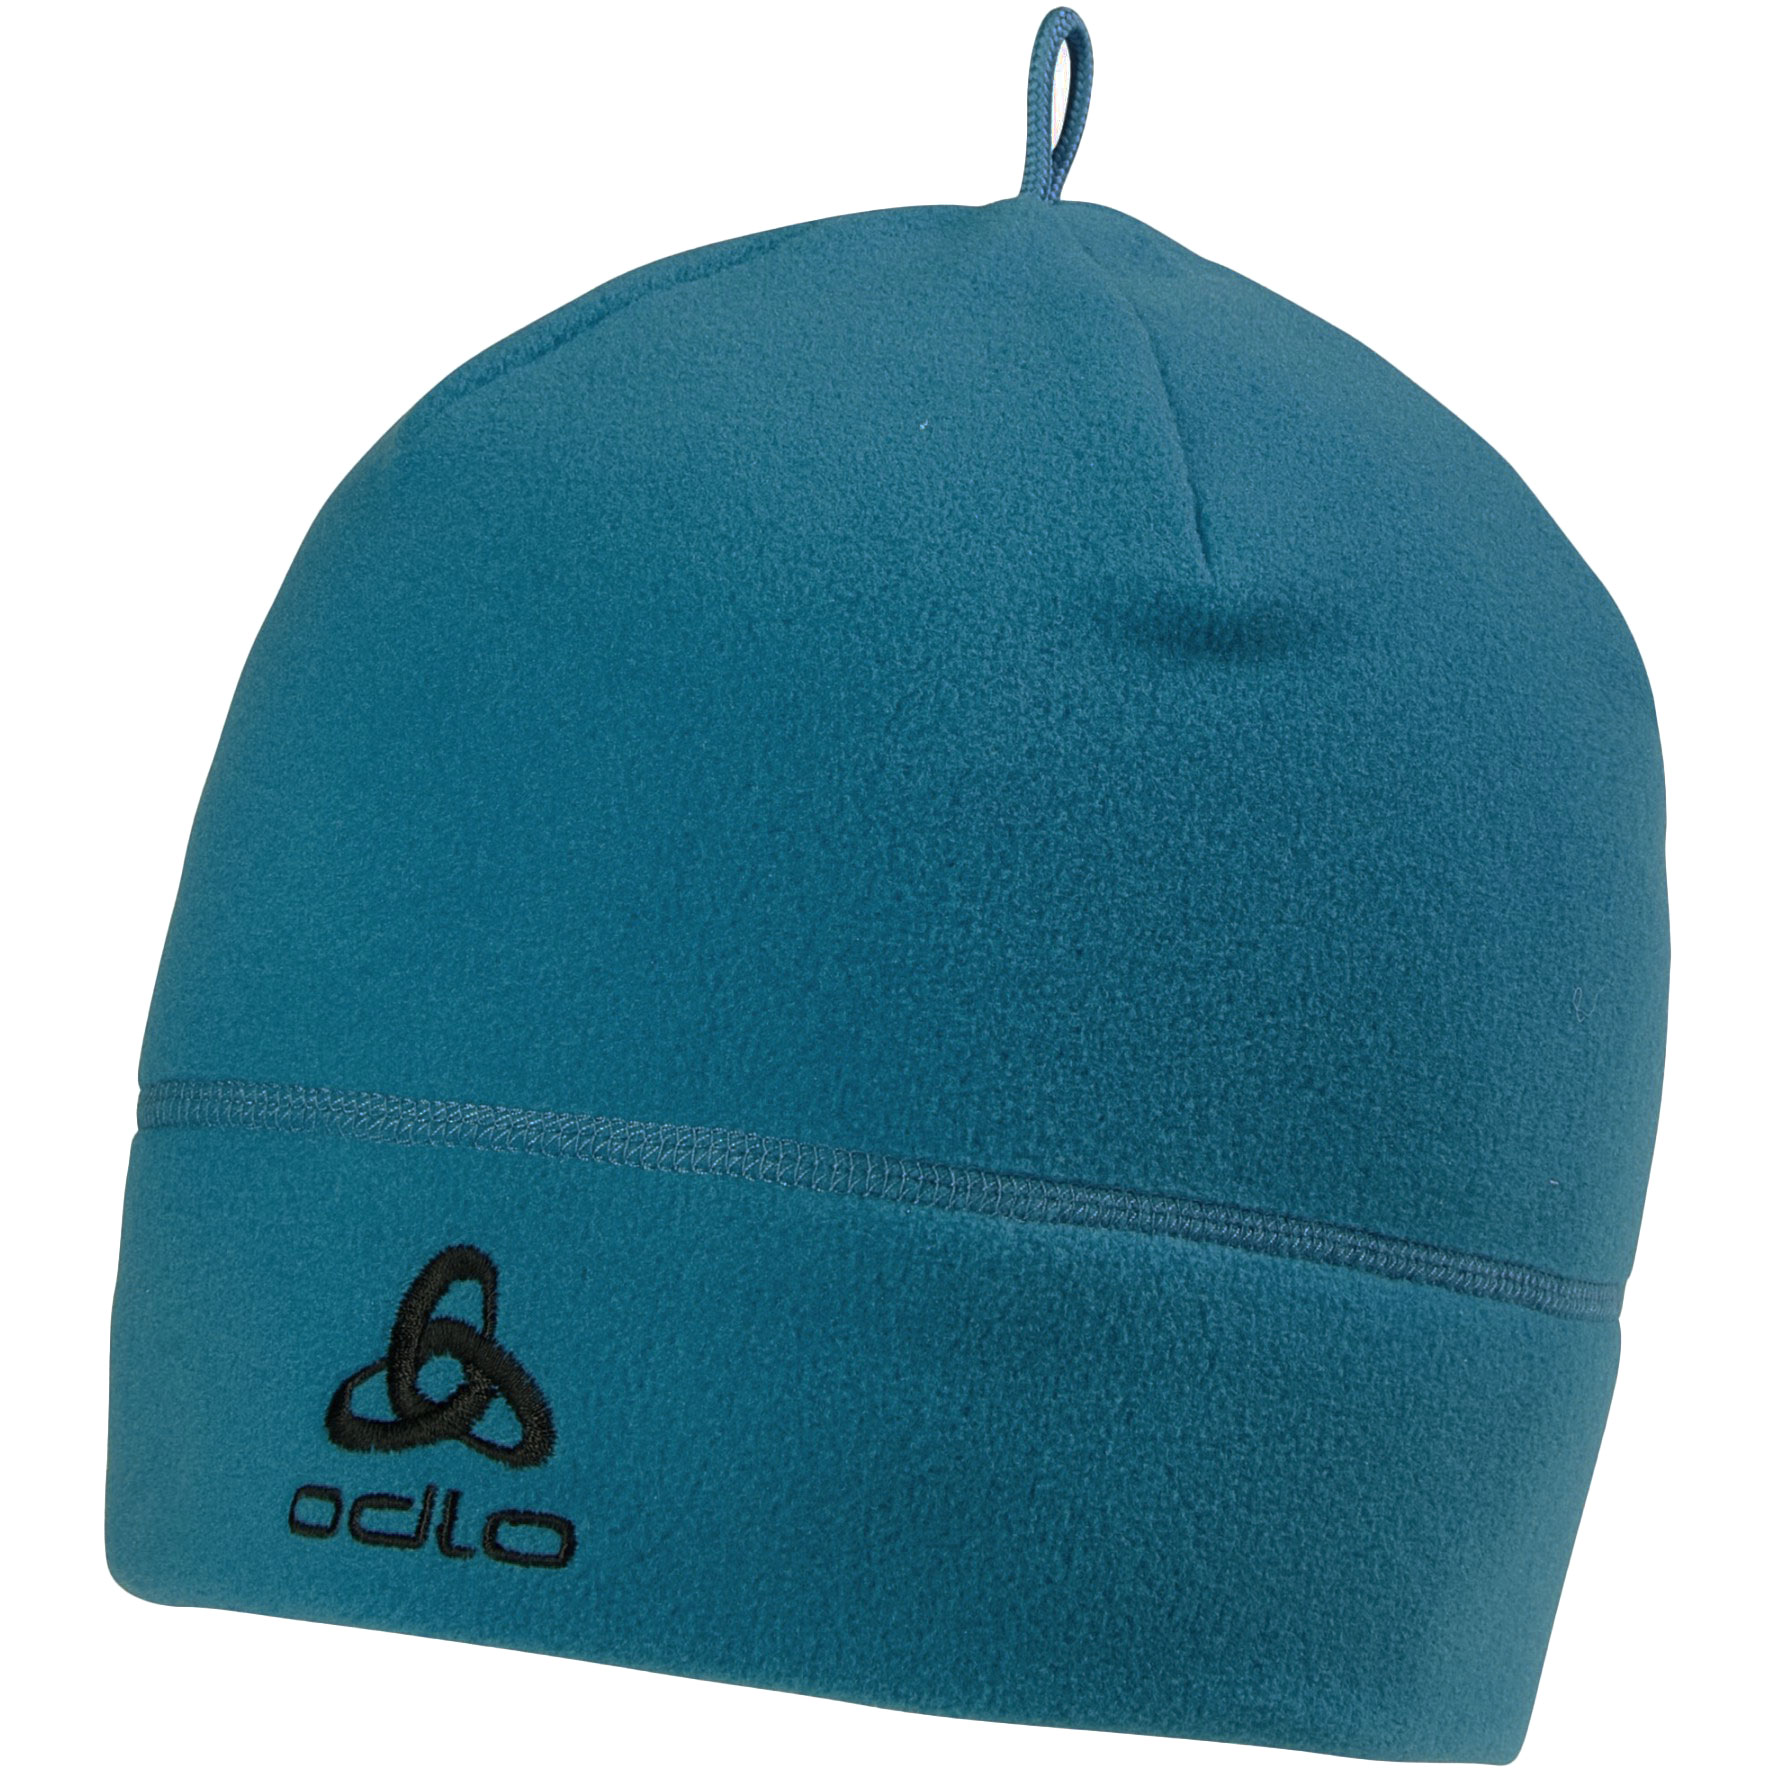 Produktbild von Odlo Microfleece Warm Mütze - saxony blue